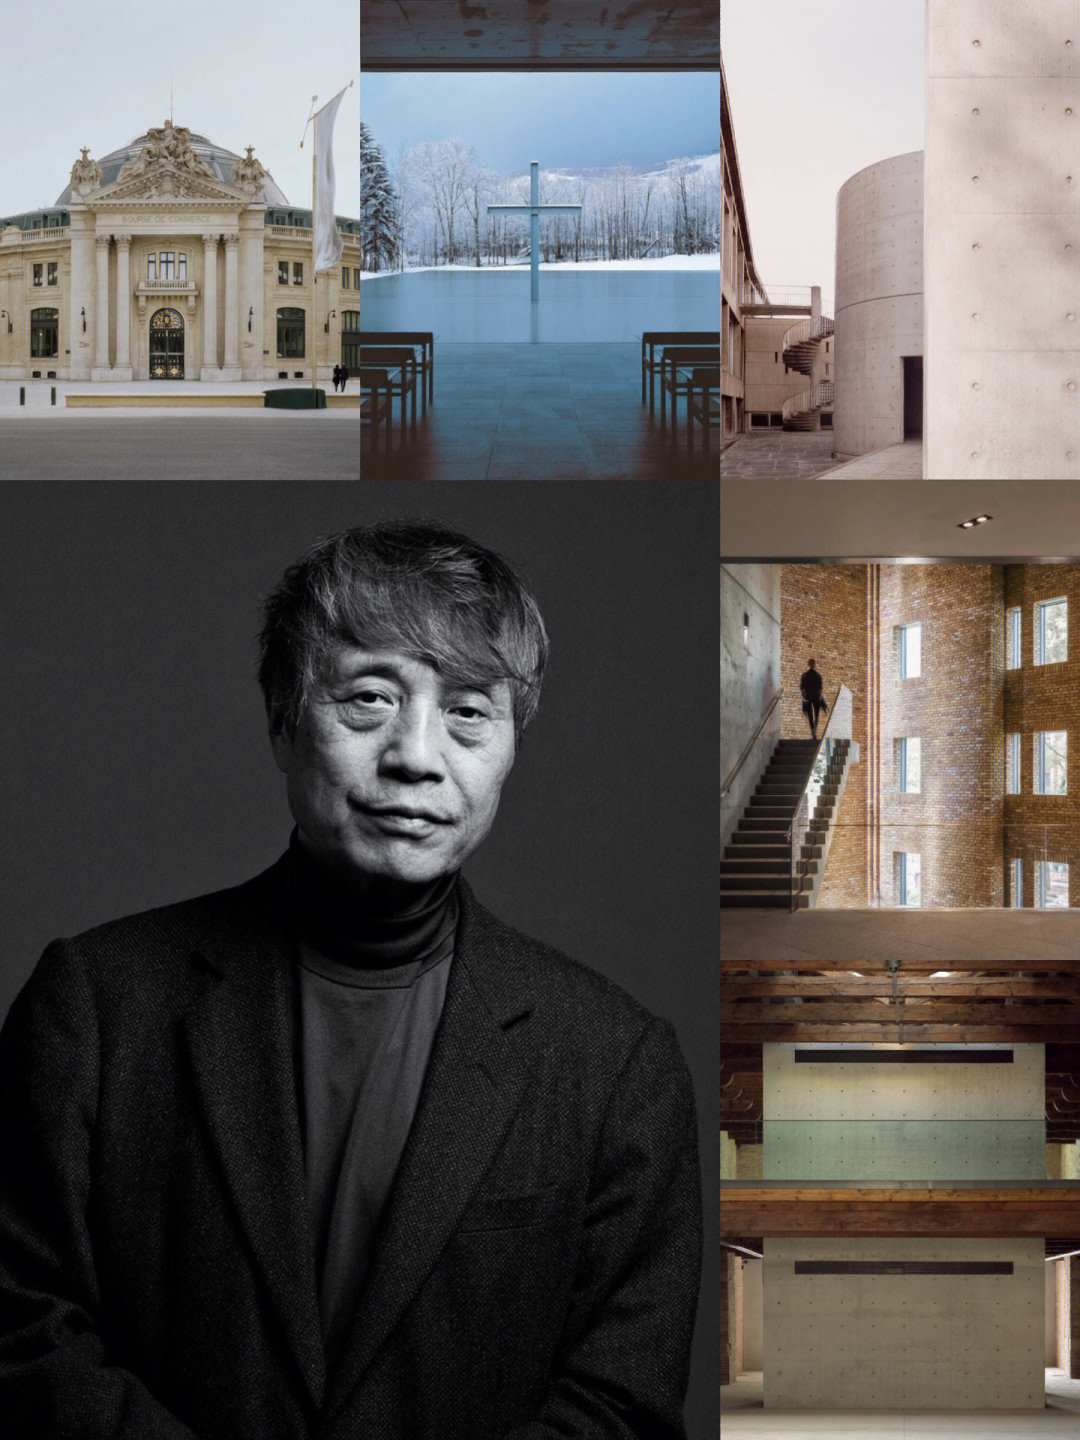 7515安藤忠雄日本建筑师,他的一生甚有传奇性,在成为建筑师前,曾